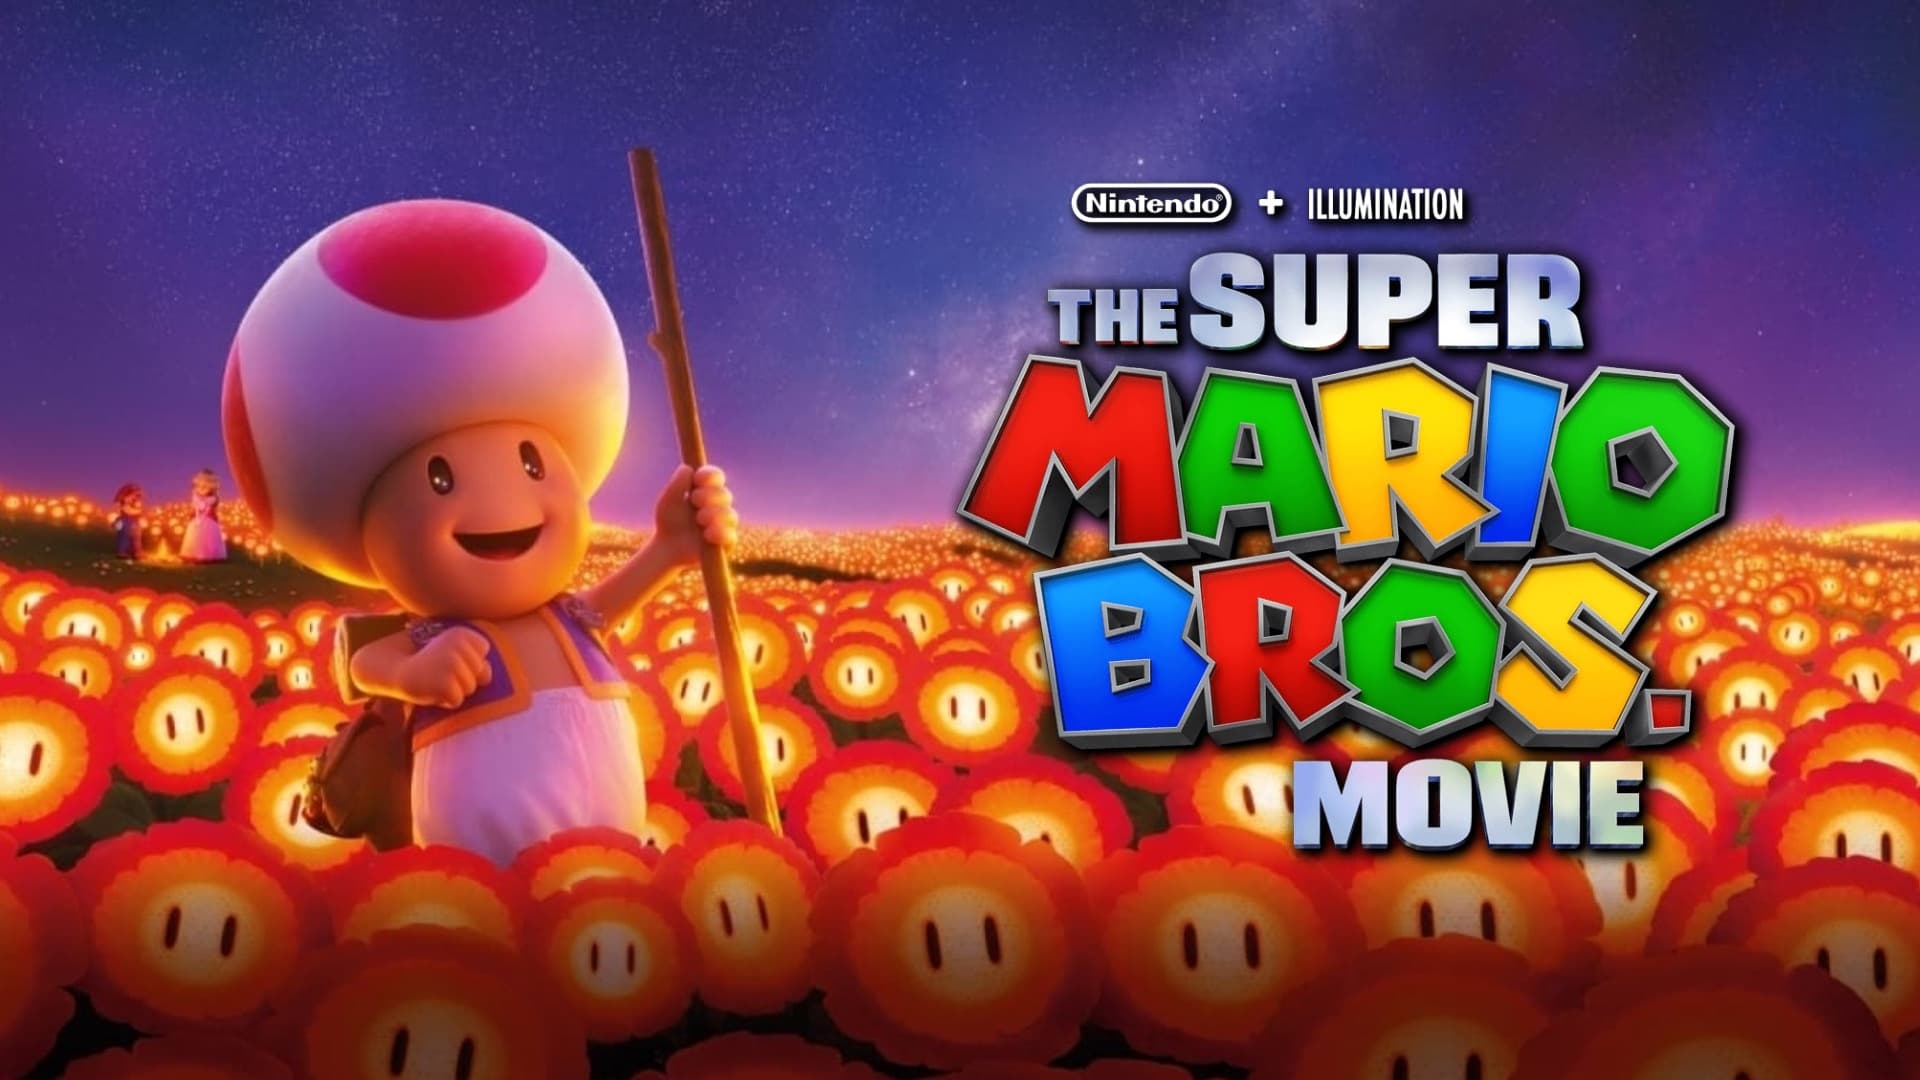 Super Mario Bros: Η Ταινία (2023)